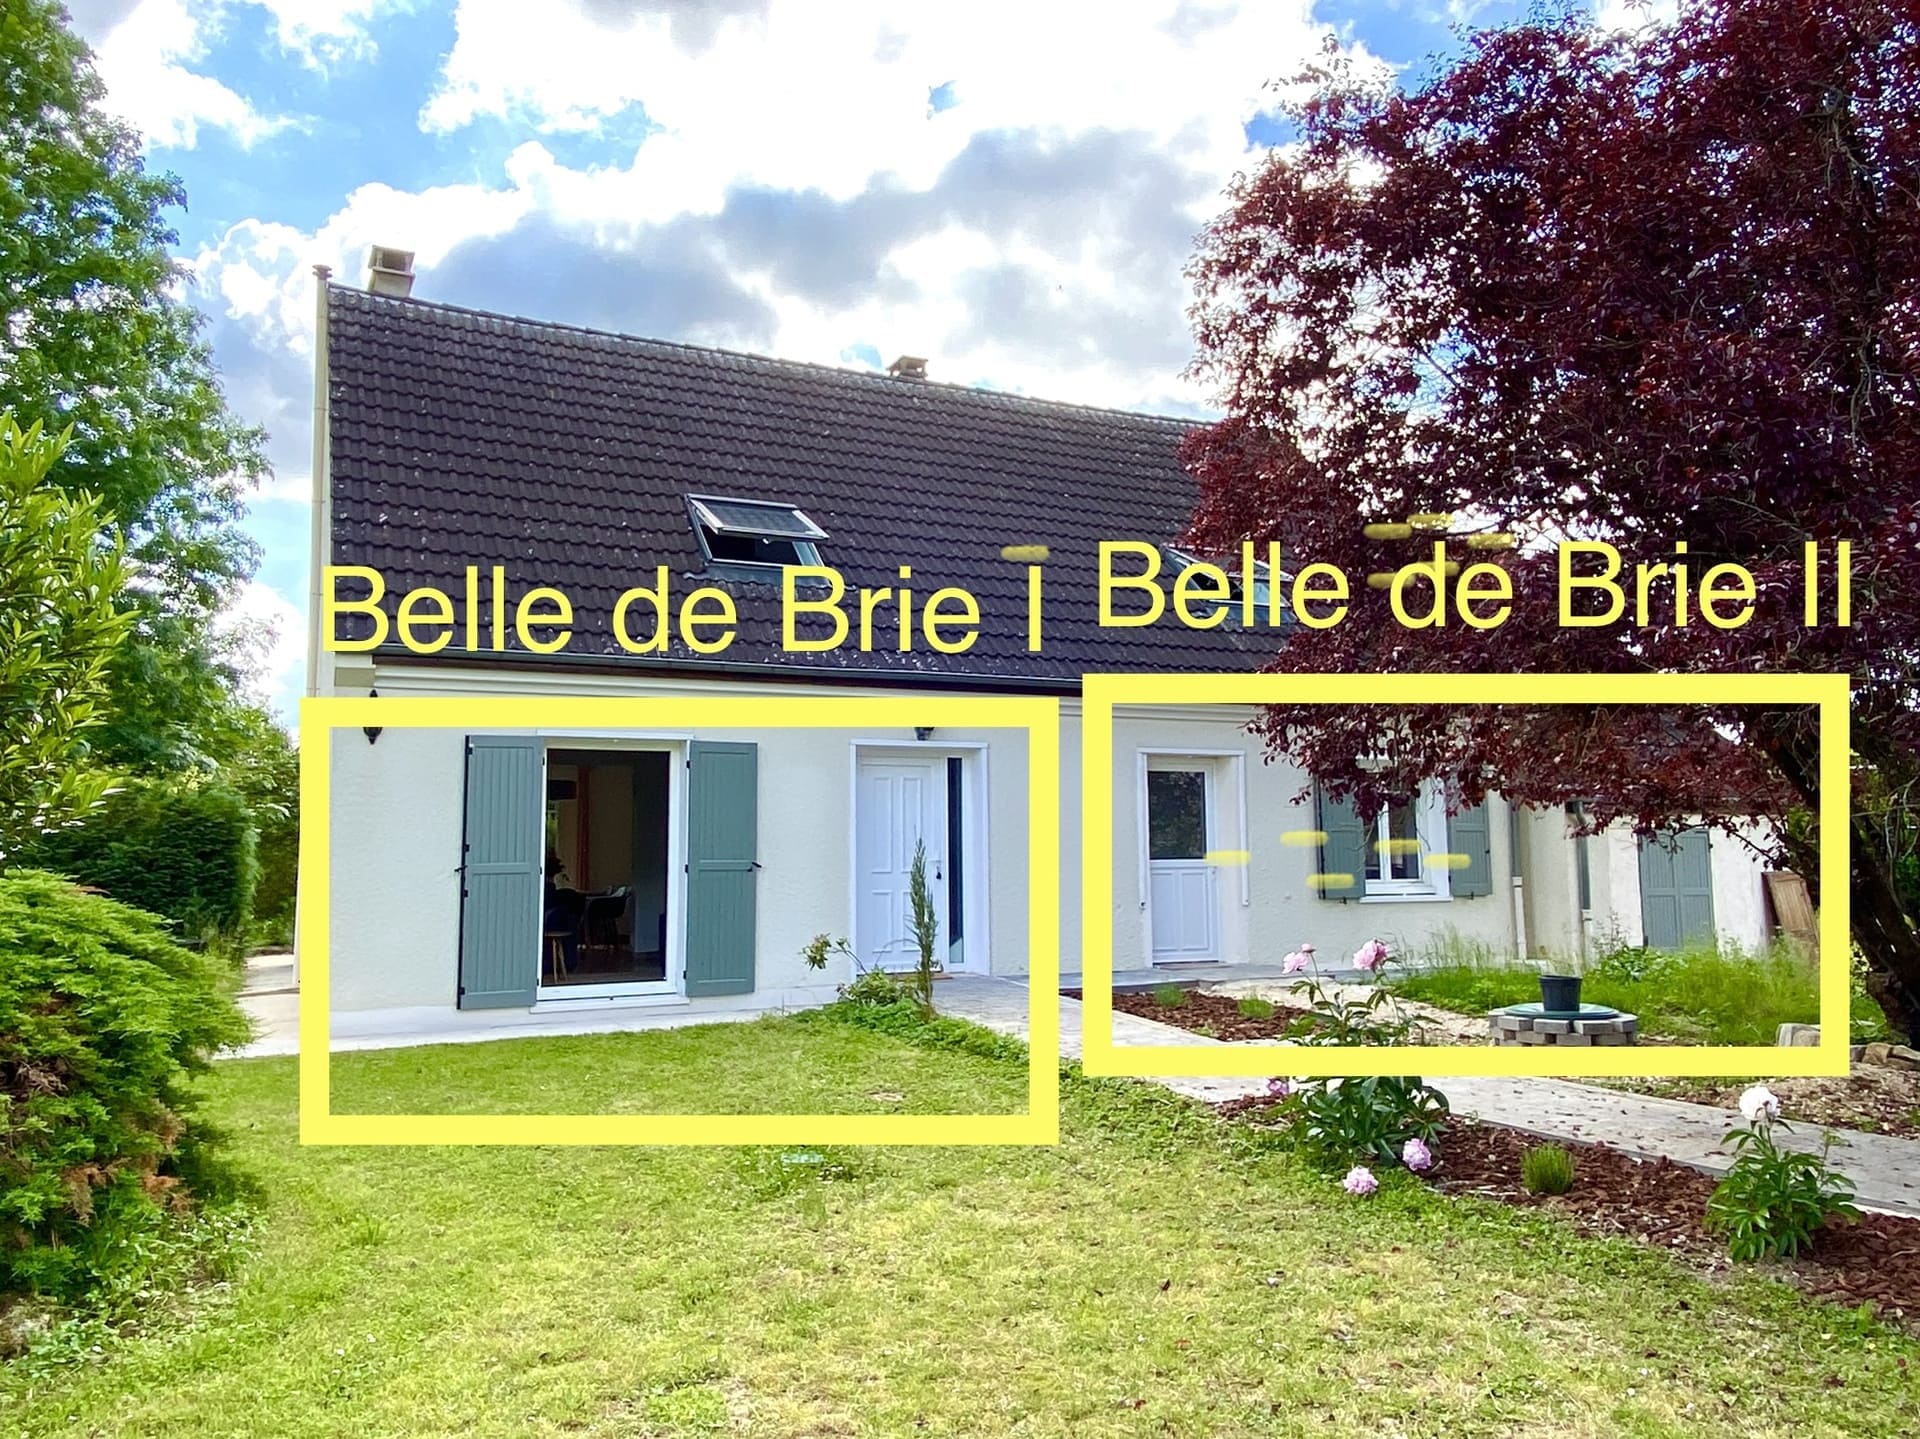 Ferienhaus Belle de Brie mit den beiden individuellen Eingängen zu den beiden Wohnungen